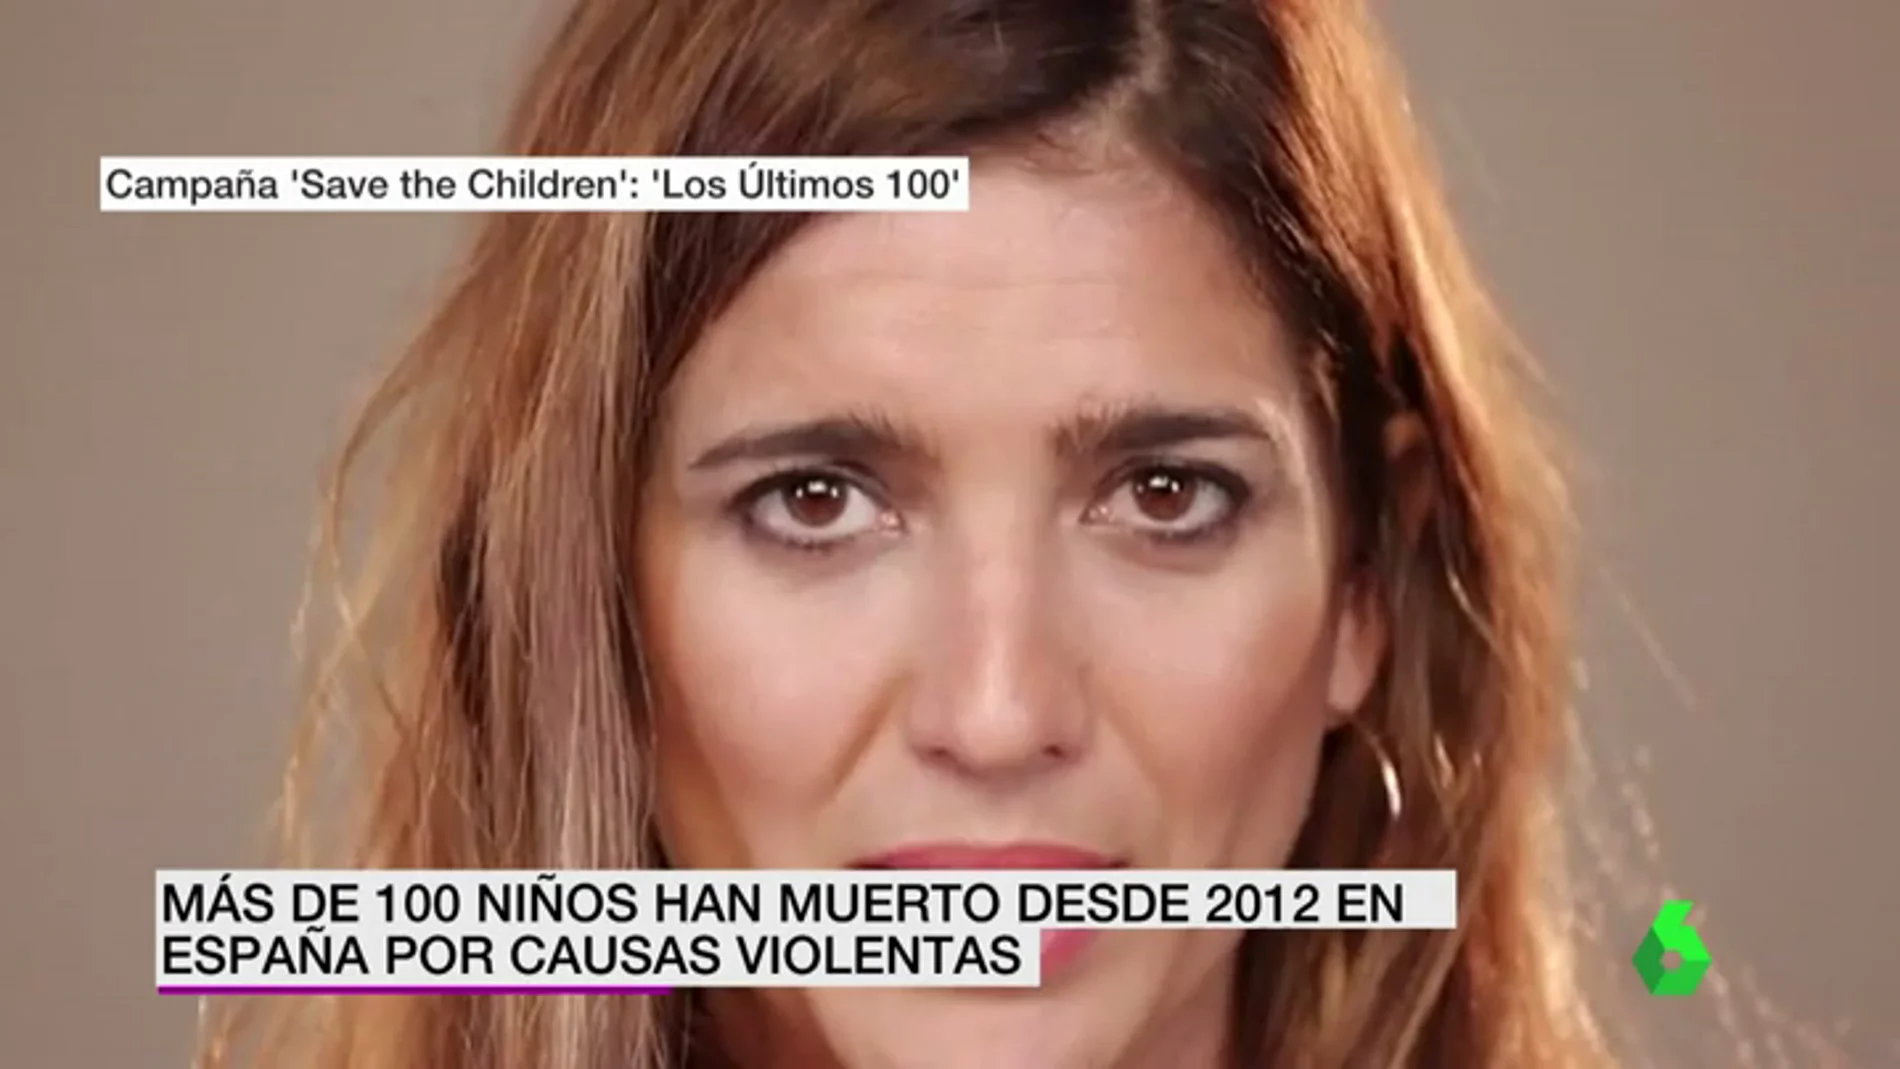 #Losúltimos100, la campaña de Save the Children